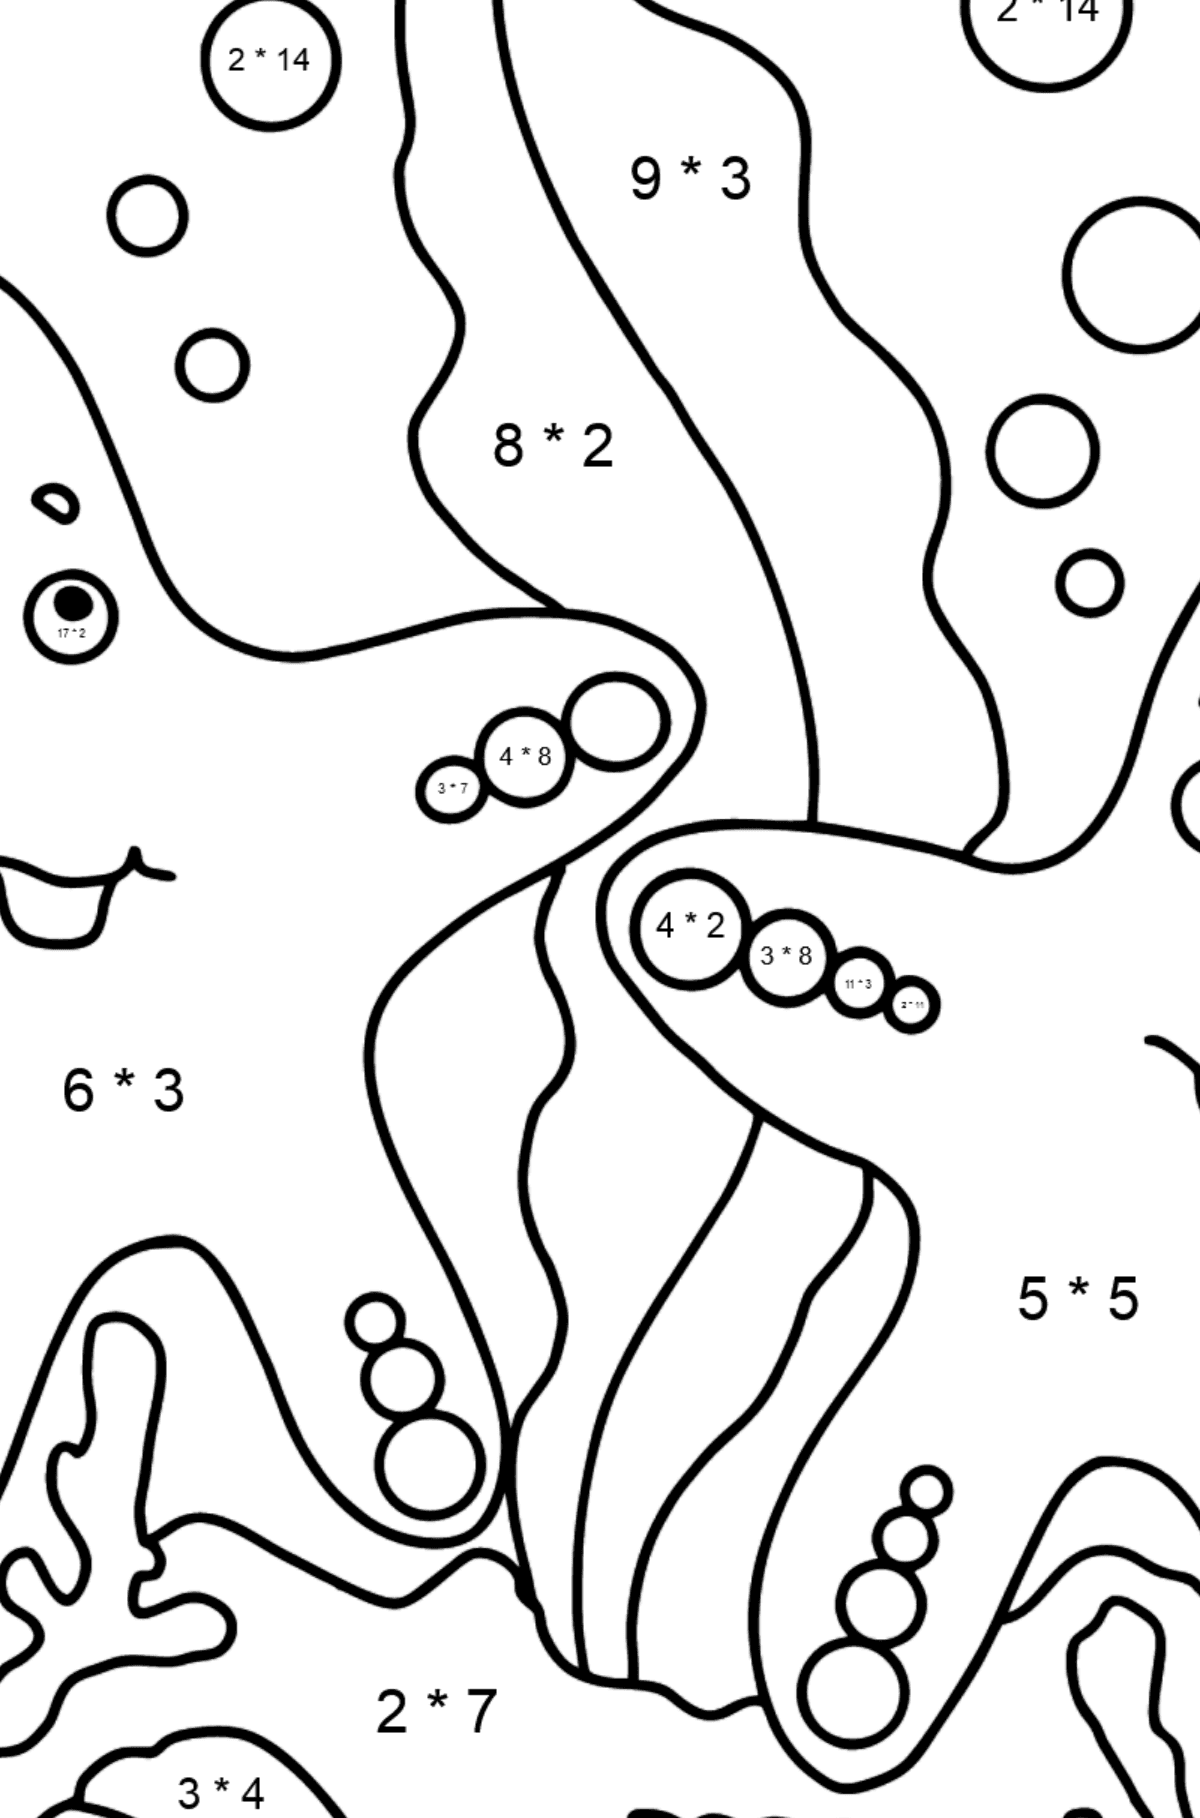 Dibujo para colorear Dos estrellas de mar - Colorear con Matemáticas - Multiplicaciones para Niños